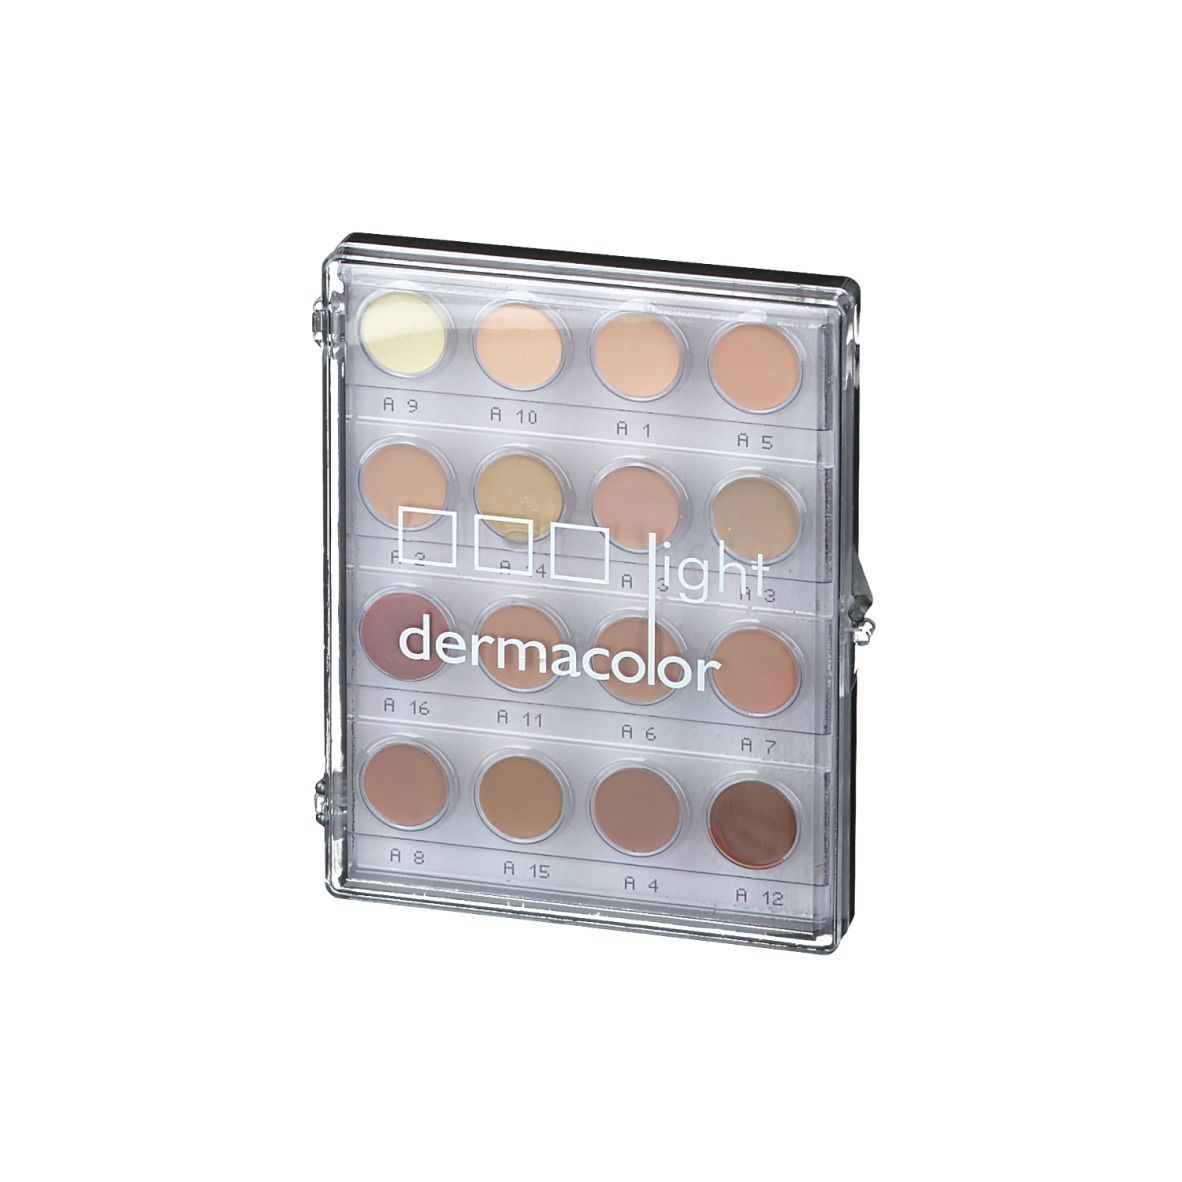 Dermacolor light Foundation Cream Mini-Palette